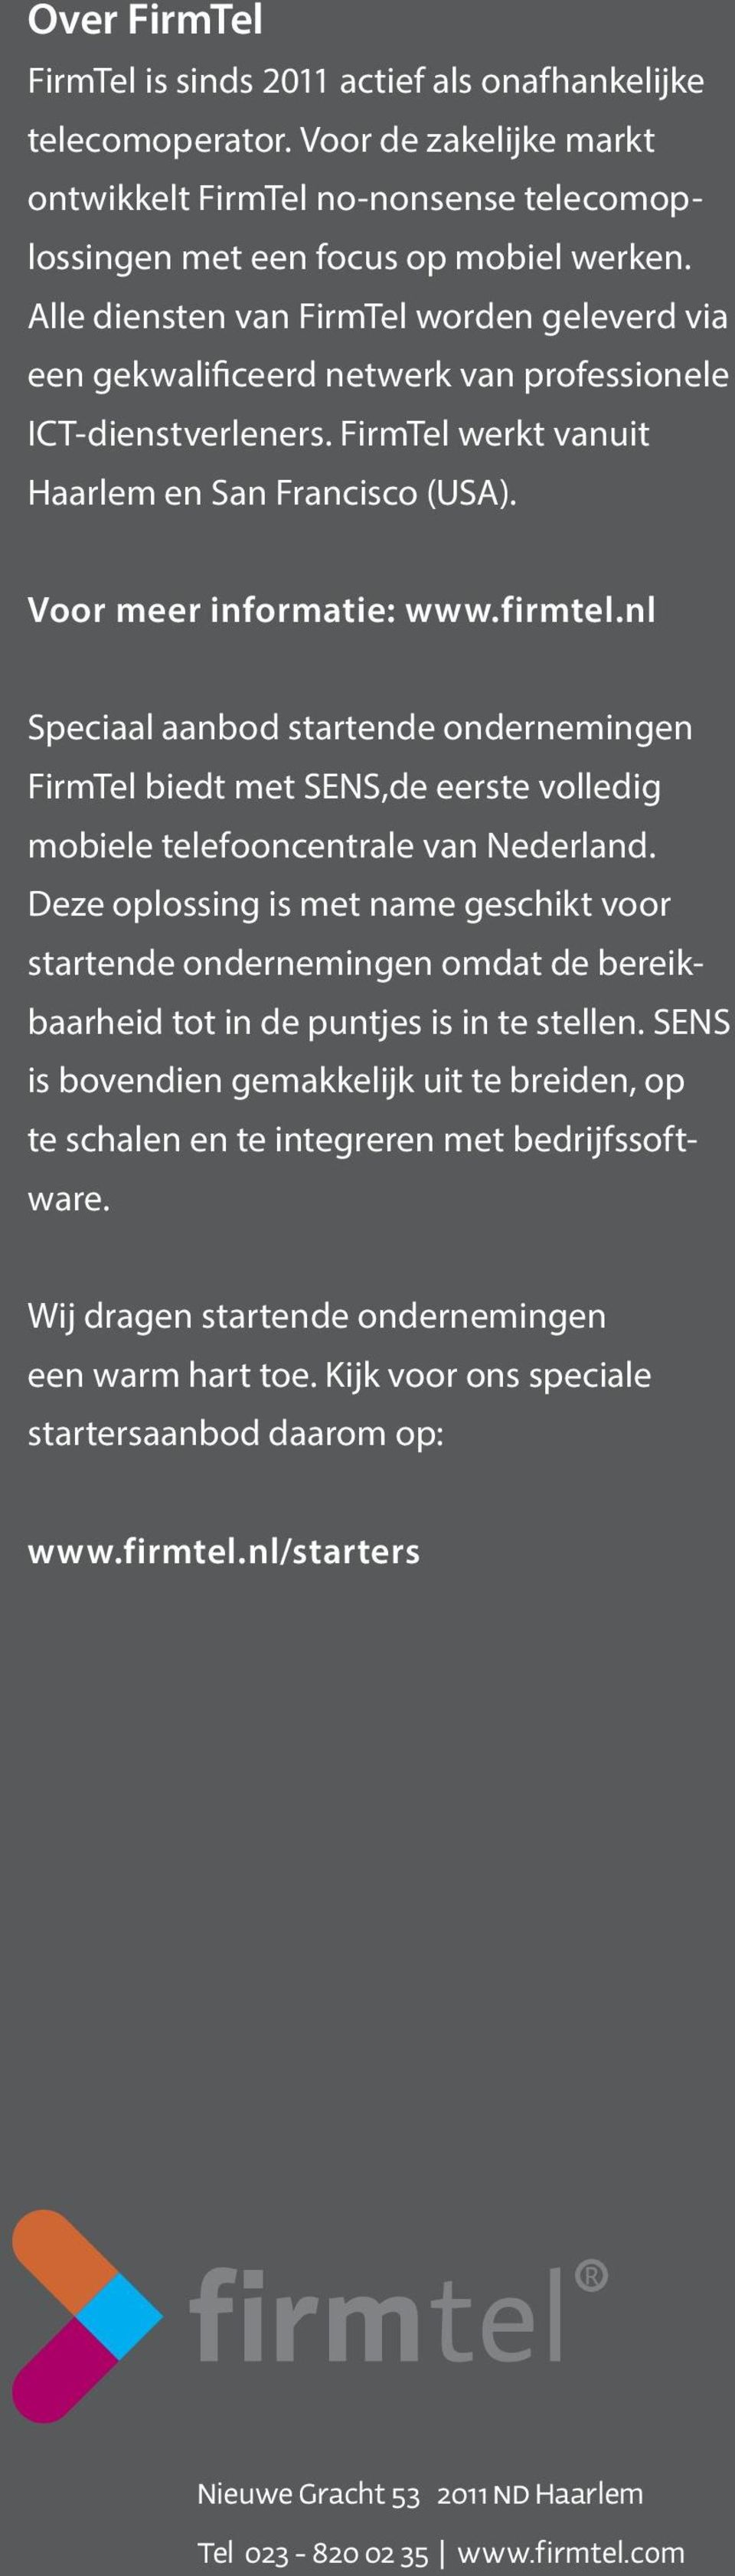 nl Speciaal aanbod startende ondernemingen FirmTel biedt met SENS,de eerste volledig mobiele telefooncentrale van Nederland.